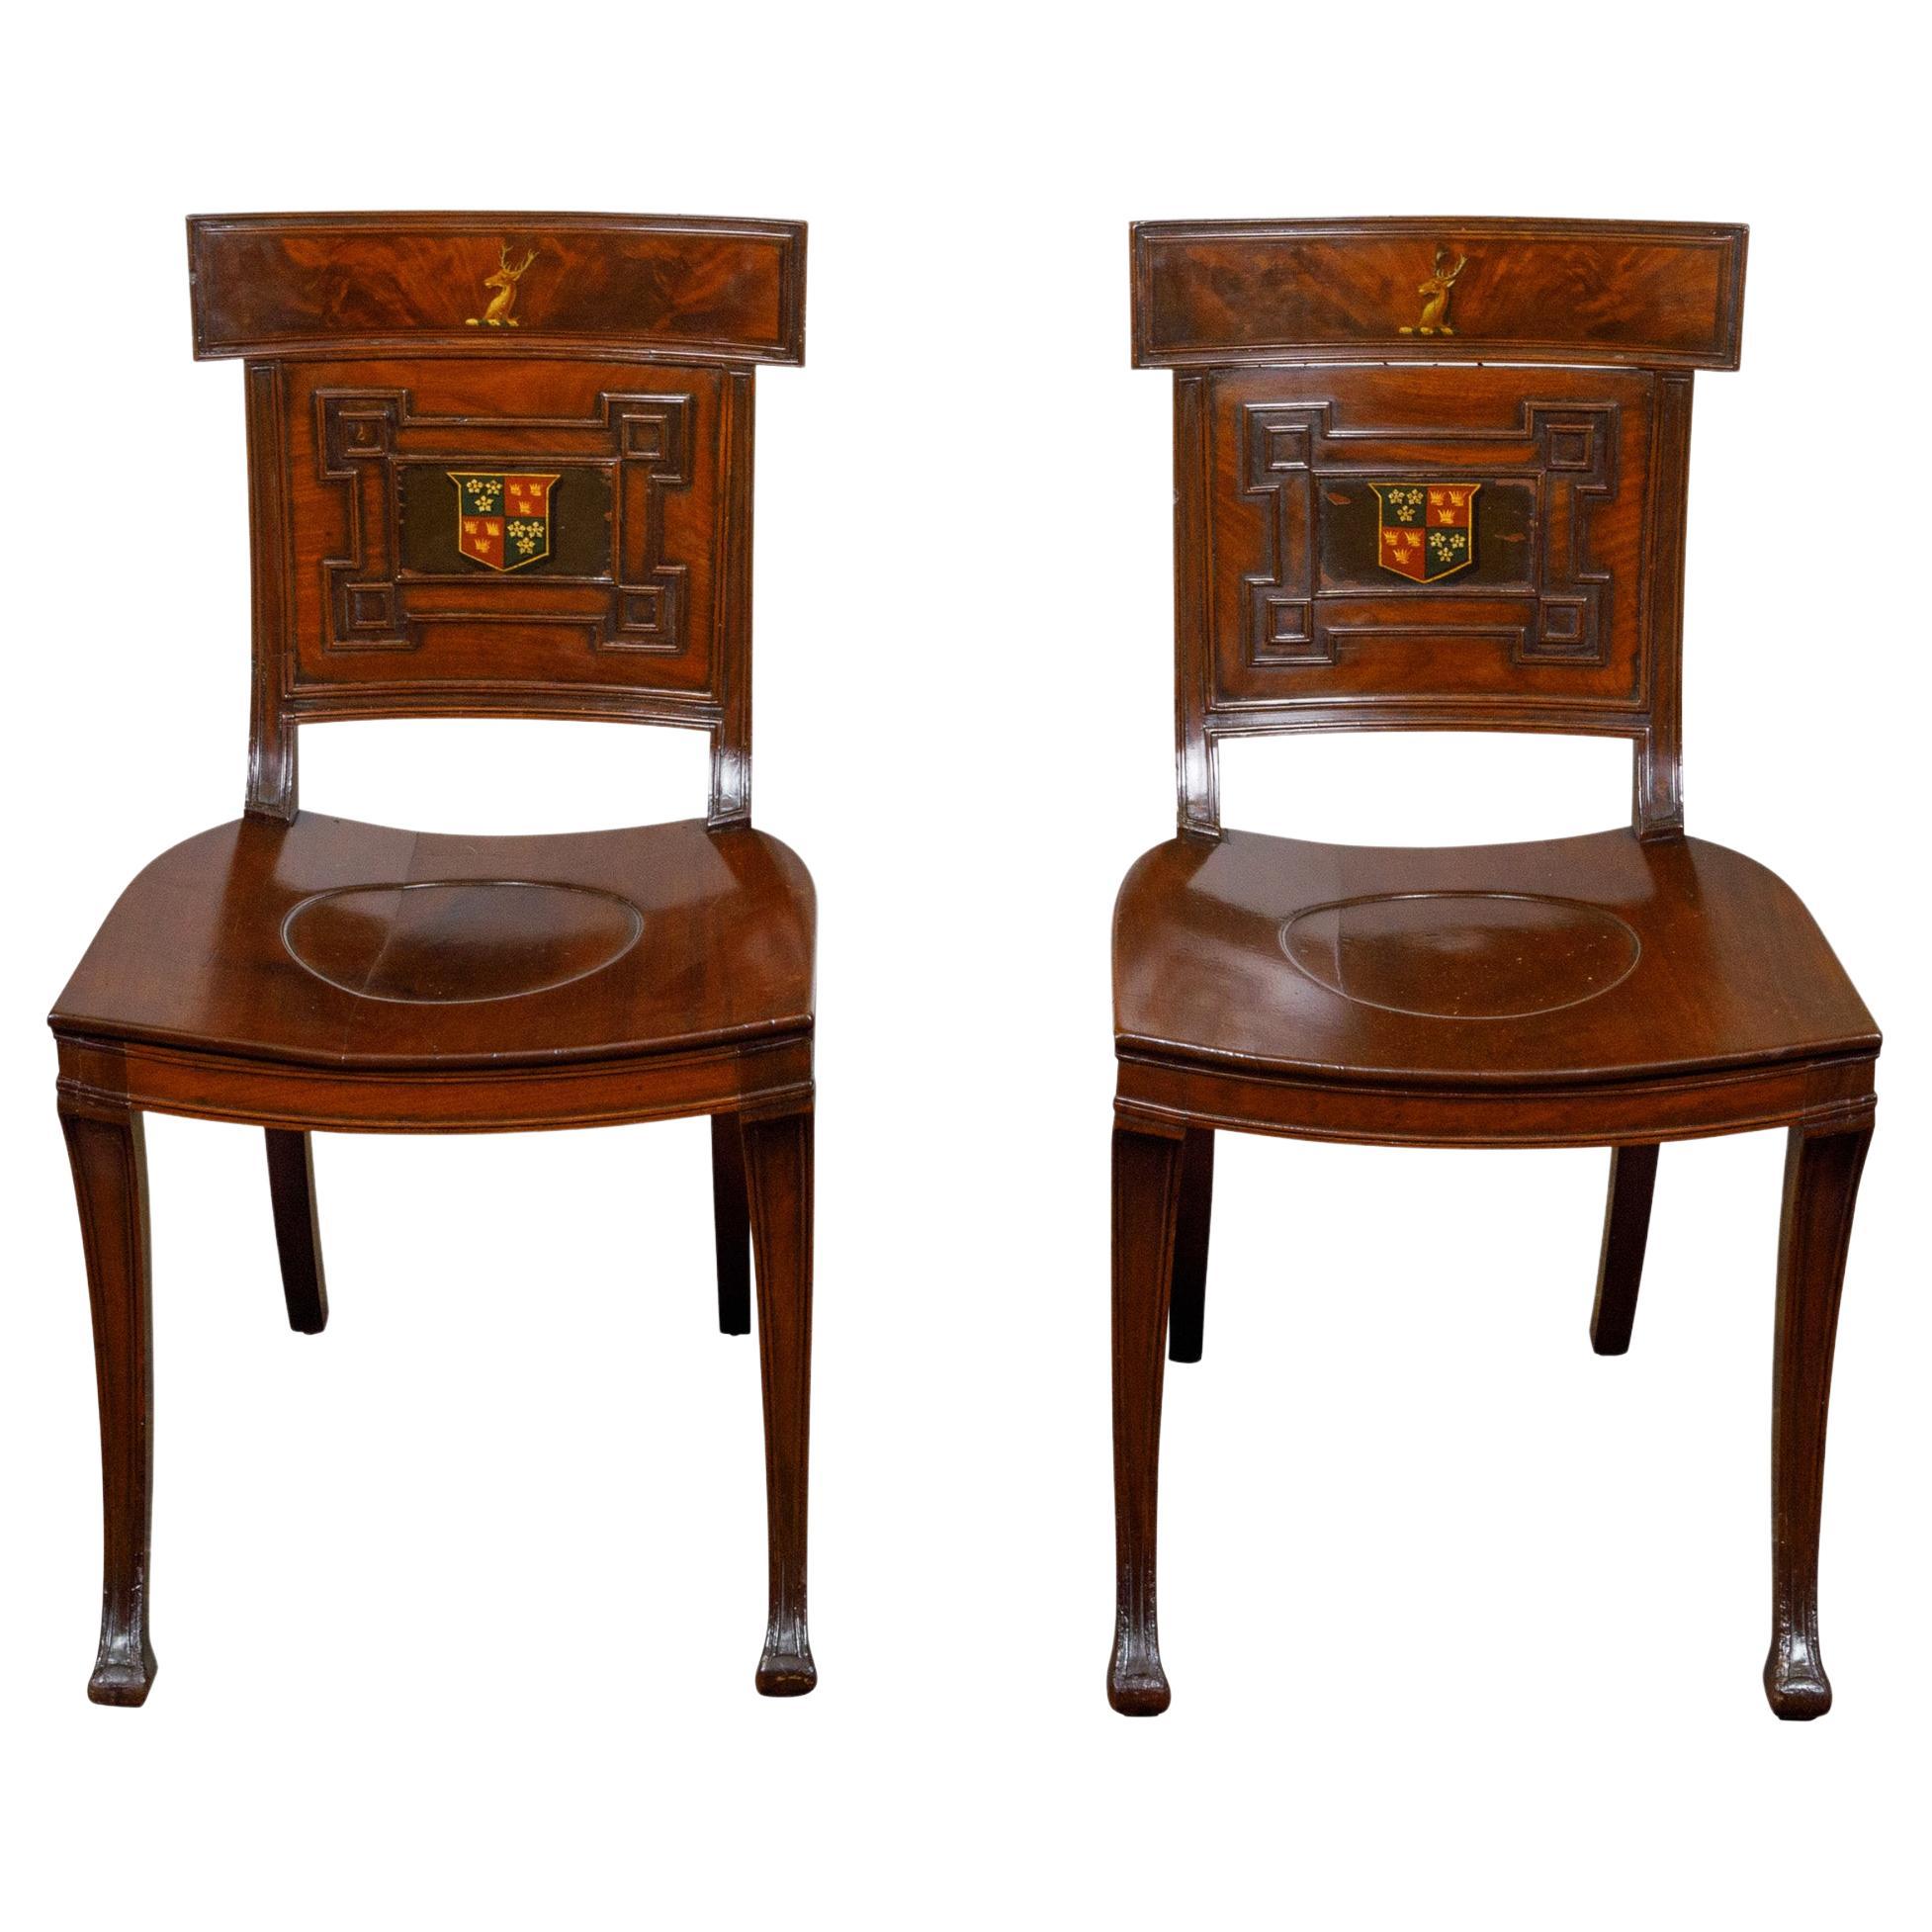 Paire de chaises de salon anglaises Regency en acajou avec accoudoirs peints